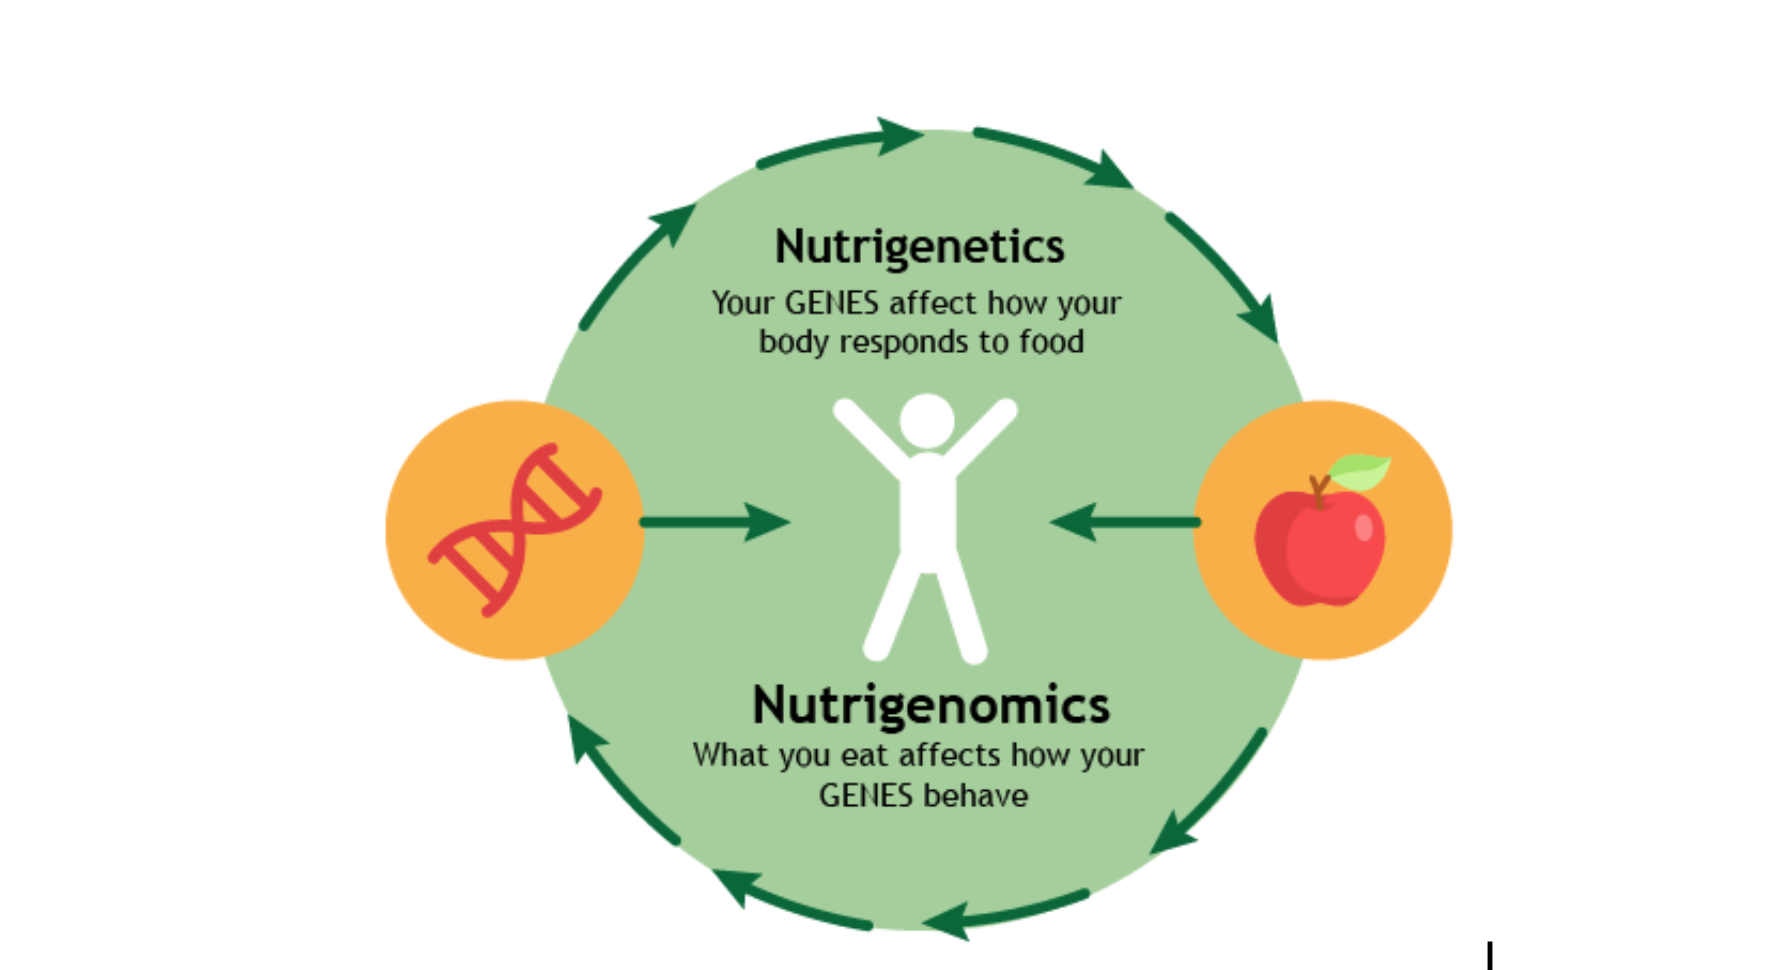 Nutrigenetics and nutrigenomics